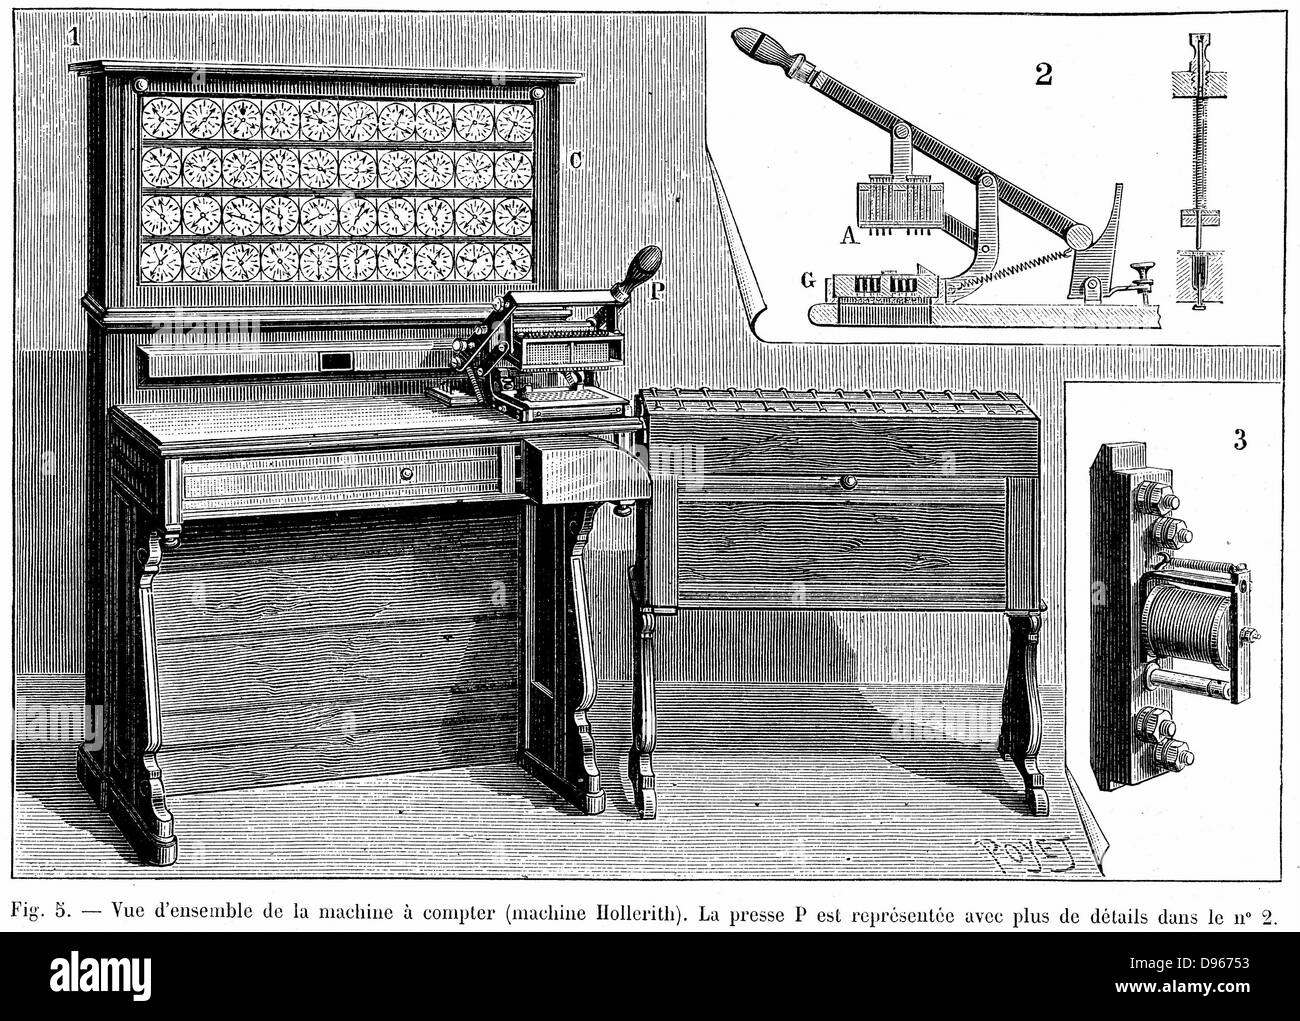 Tabulatrice Hollerith qui utilisait une carte perforée système de mémoire. Utilisé pour la première fois dans le recensement des États-Unis de 1890. La gravure, Paris, 1894 Banque D'Images